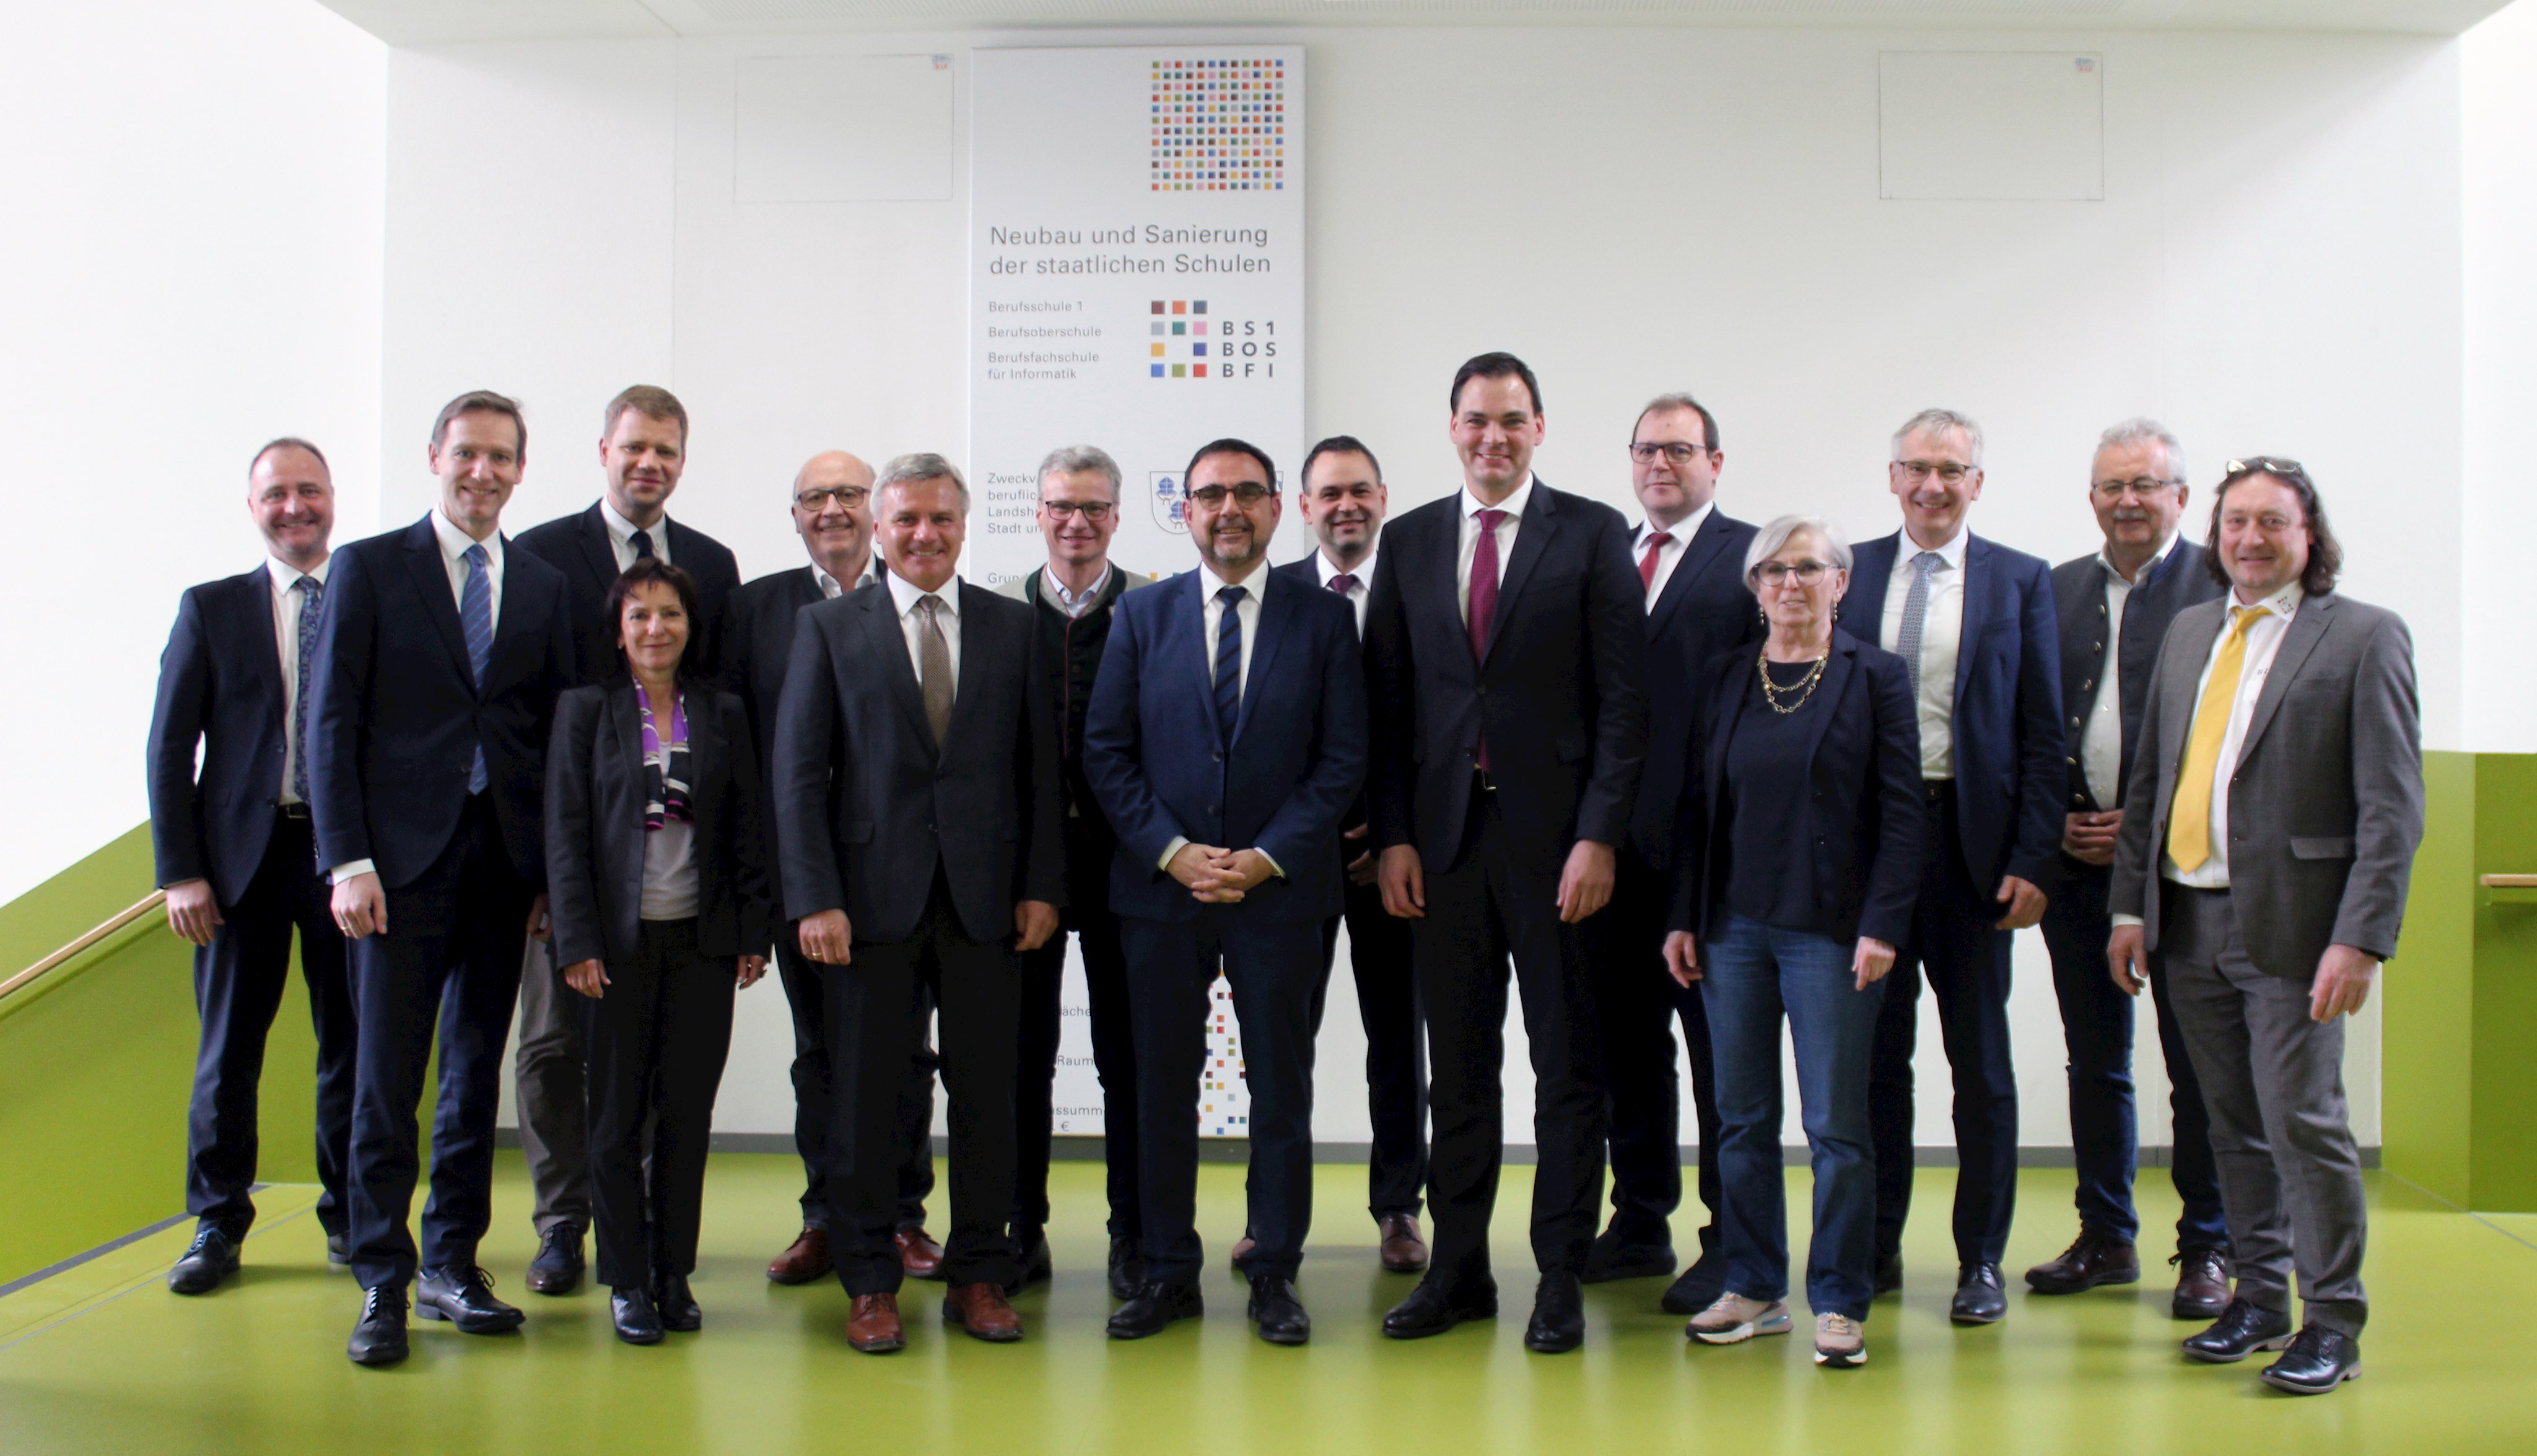 Die niederbayerischen Landräte und Landrätin gemeinsam mit Staatsminister Holetschek beim Gruppenfoto nach der Tagung in Landshut.